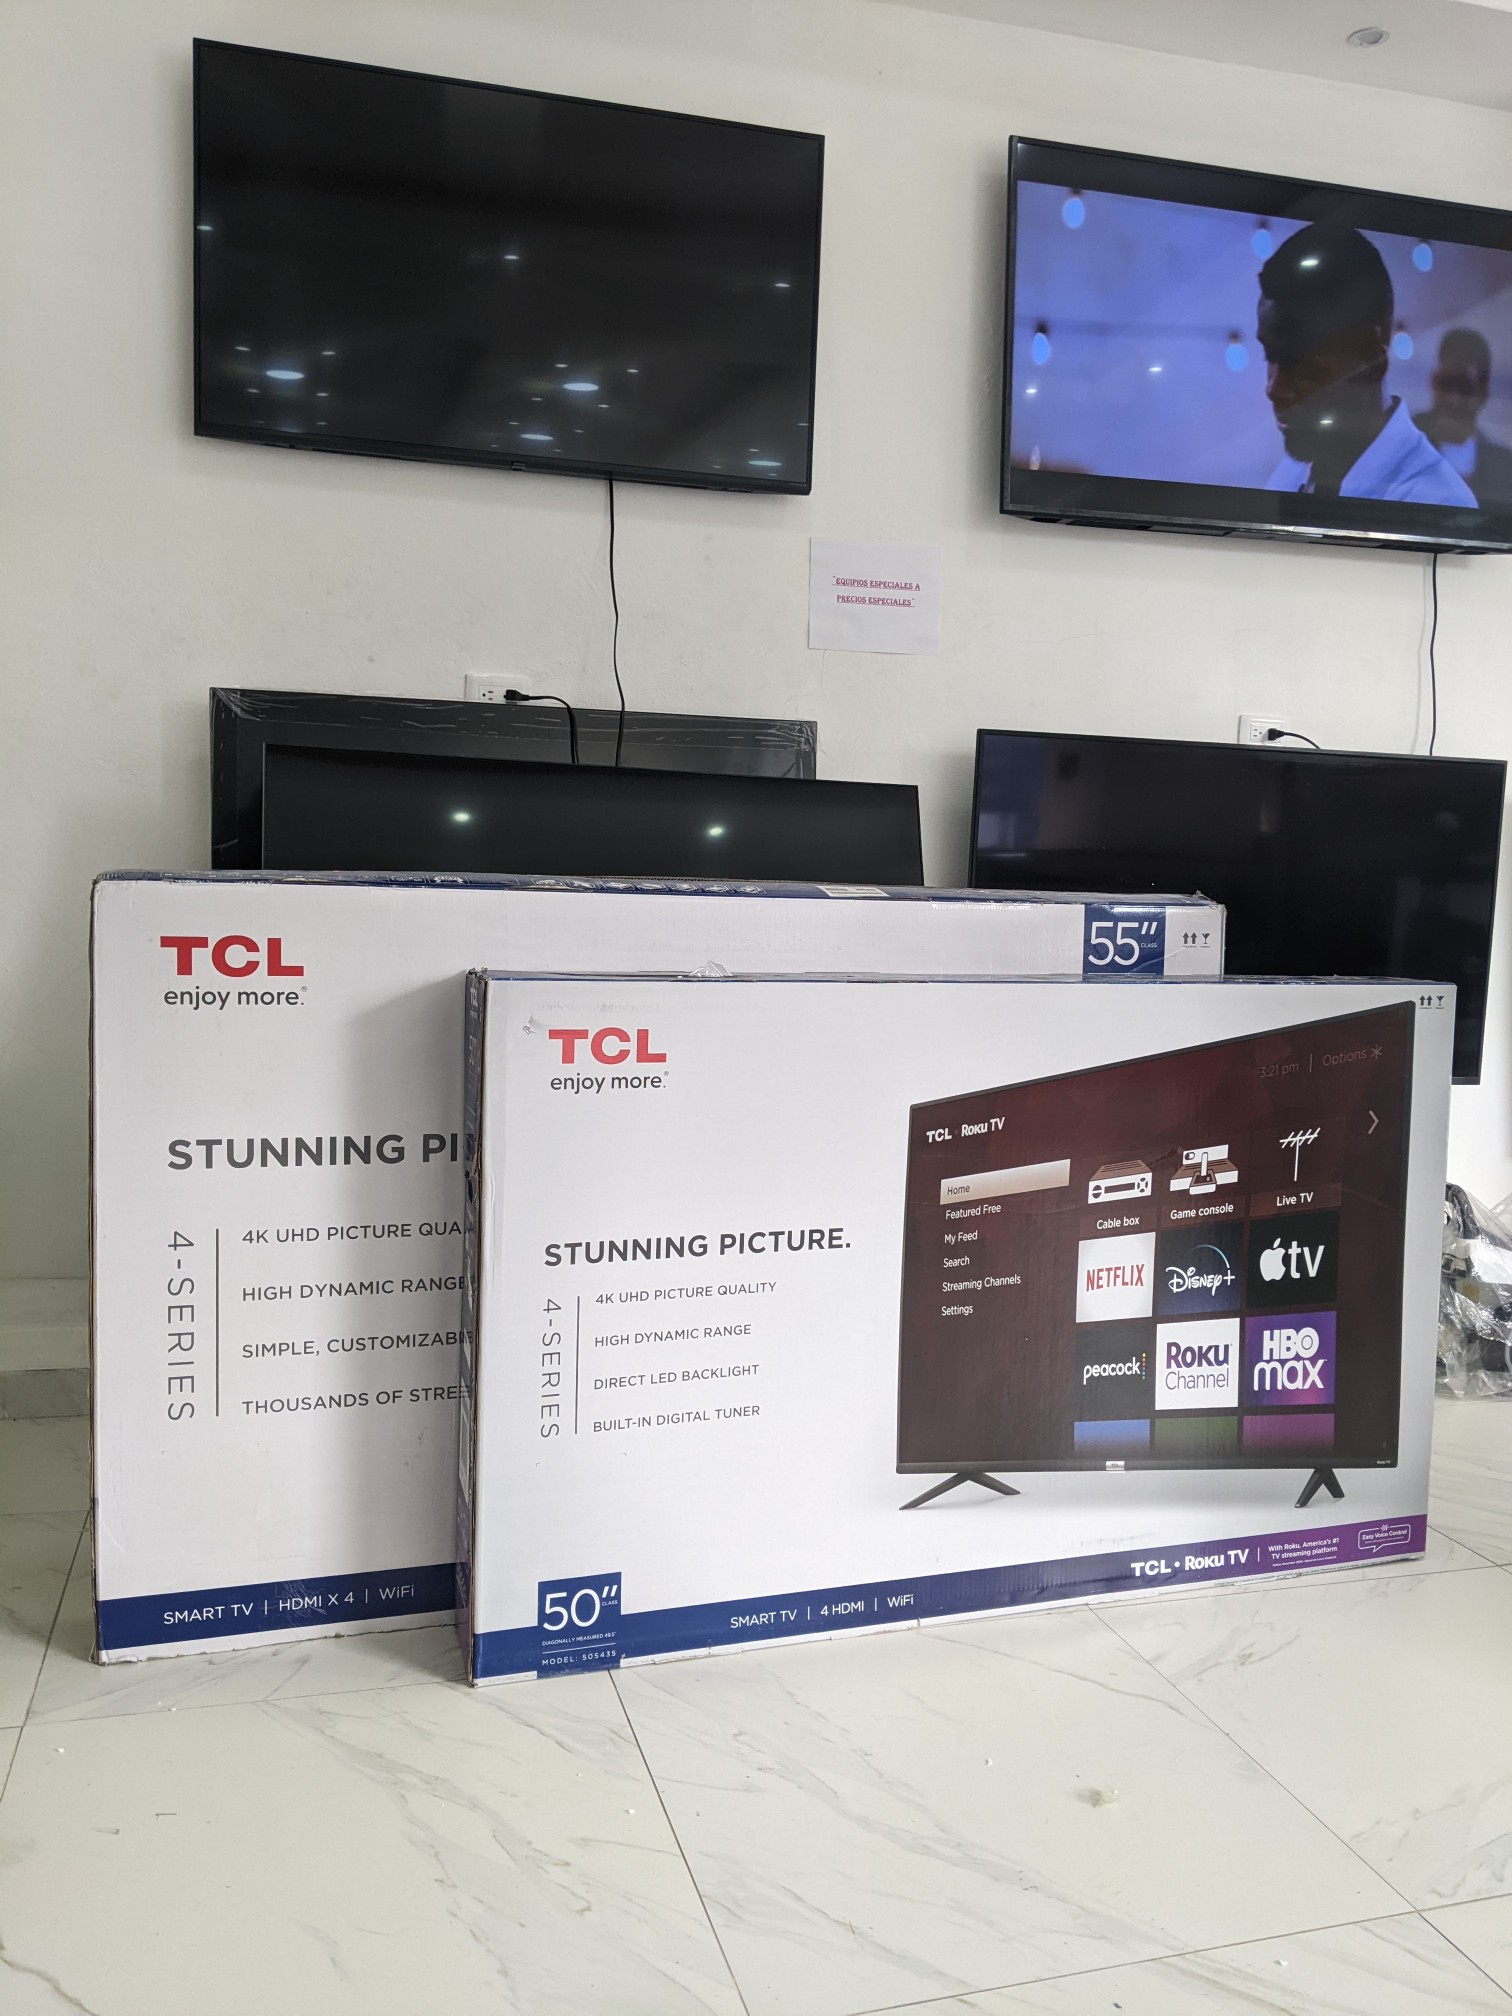 tv - Tv TCL 50 y 55 pulg. S455 sin bordes en pantalla Smart TV 4k 1 año de garantía